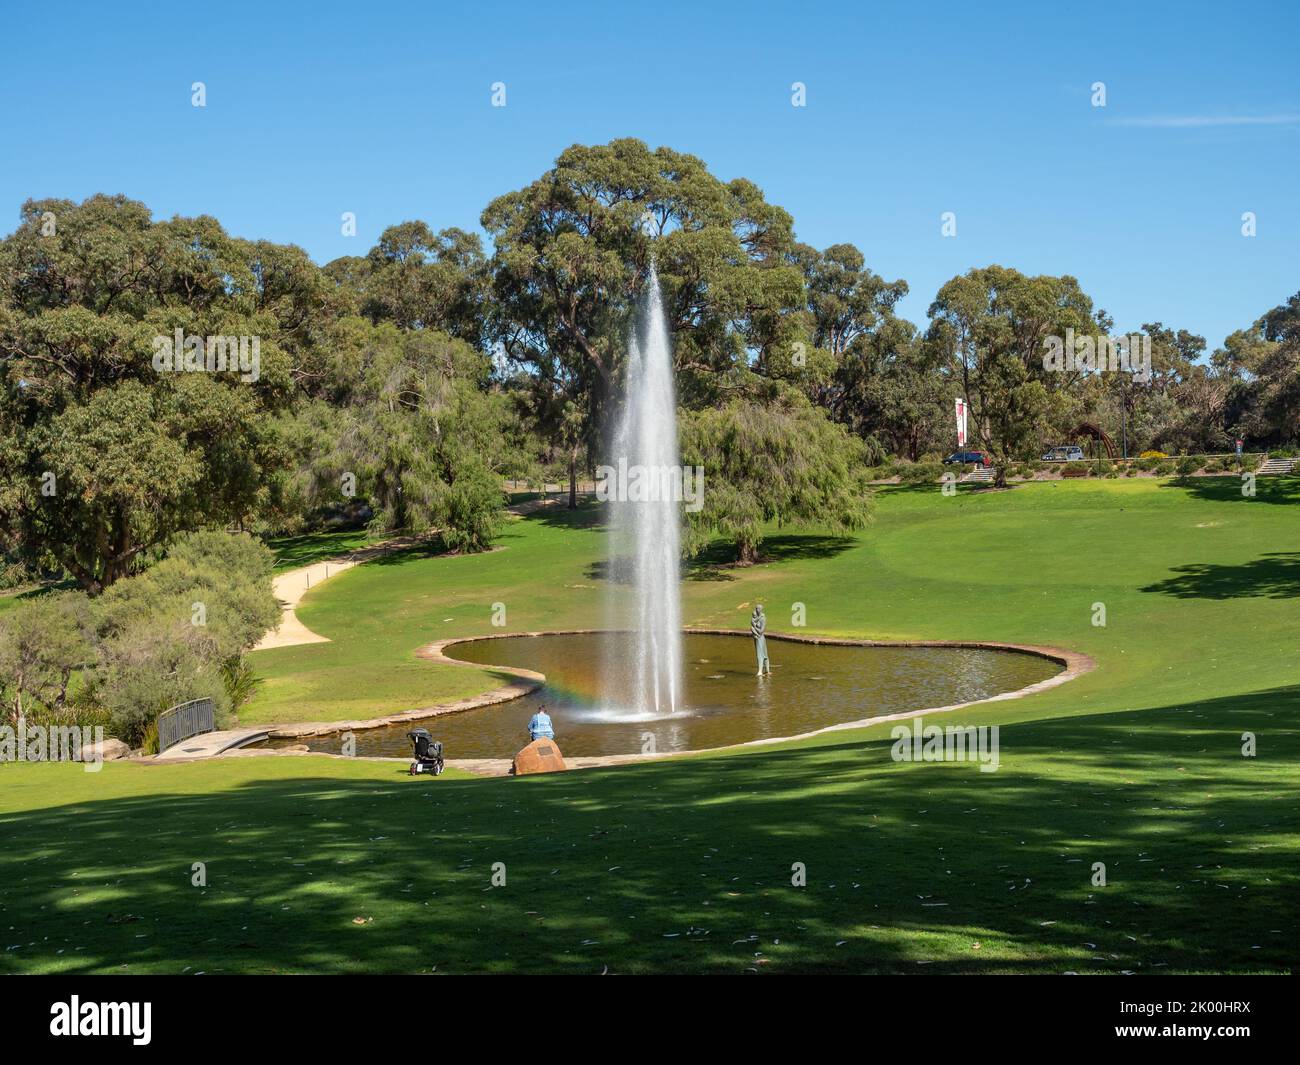 La fontaine commémorative Pioneer Women's Memorial Fountain est située dans le jardin botanique de l'Australie occidentale, à Kings Park, à Perth, en Australie occidentale. Banque D'Images